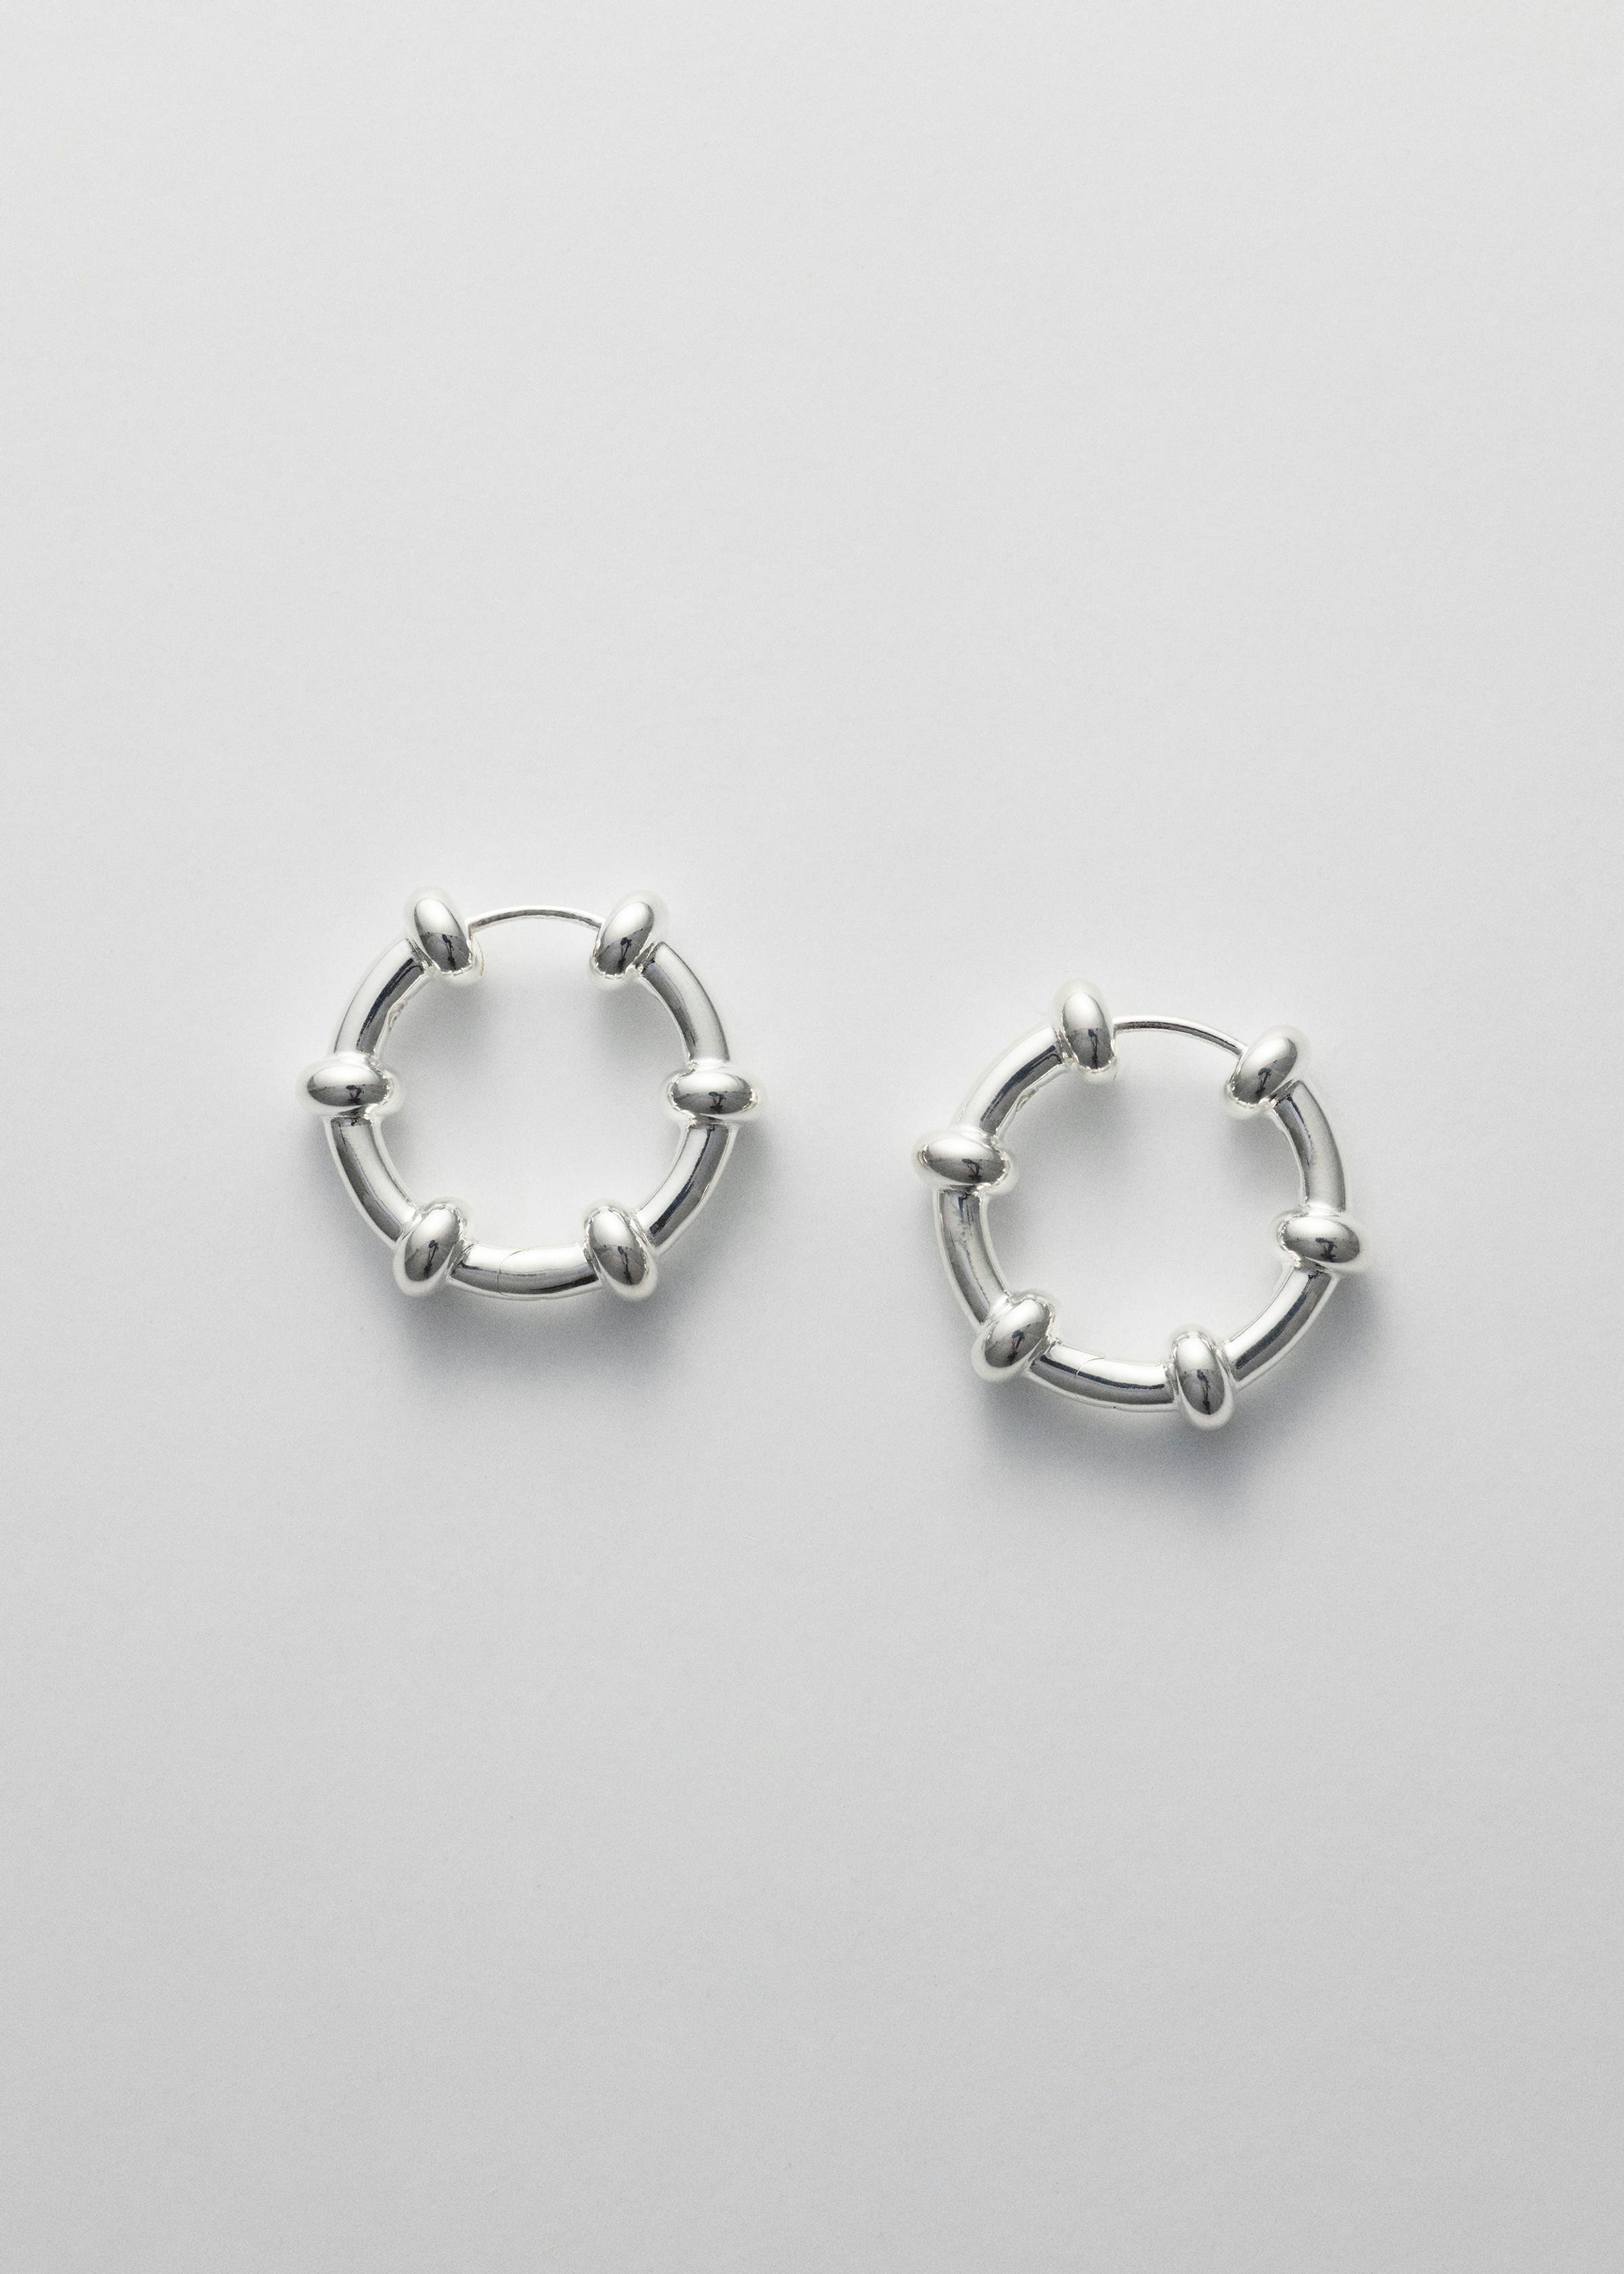 Spin earrings